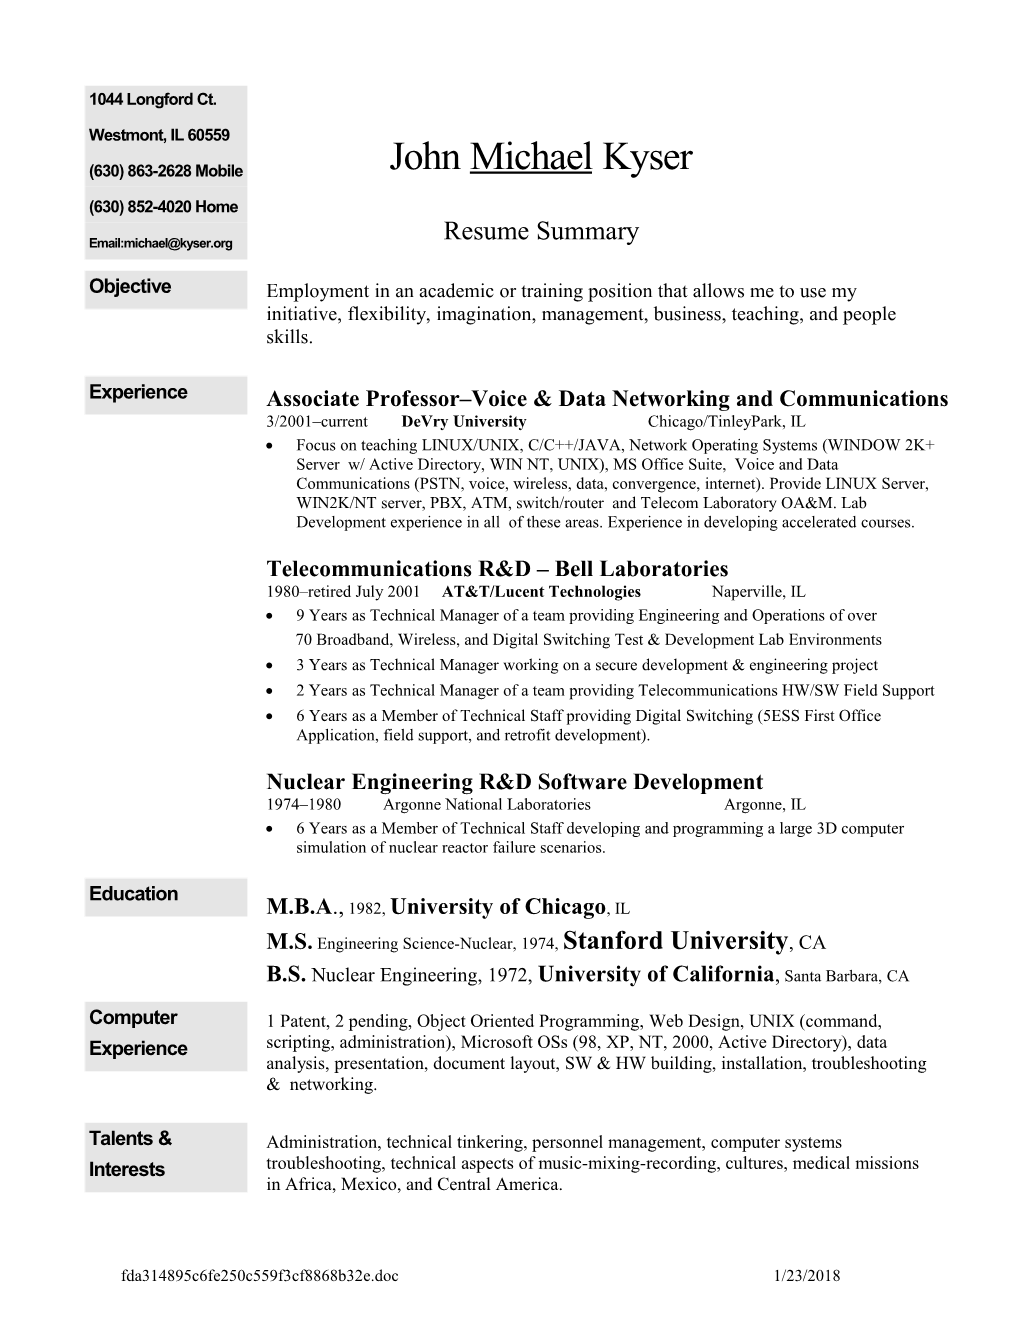 Resume Summary